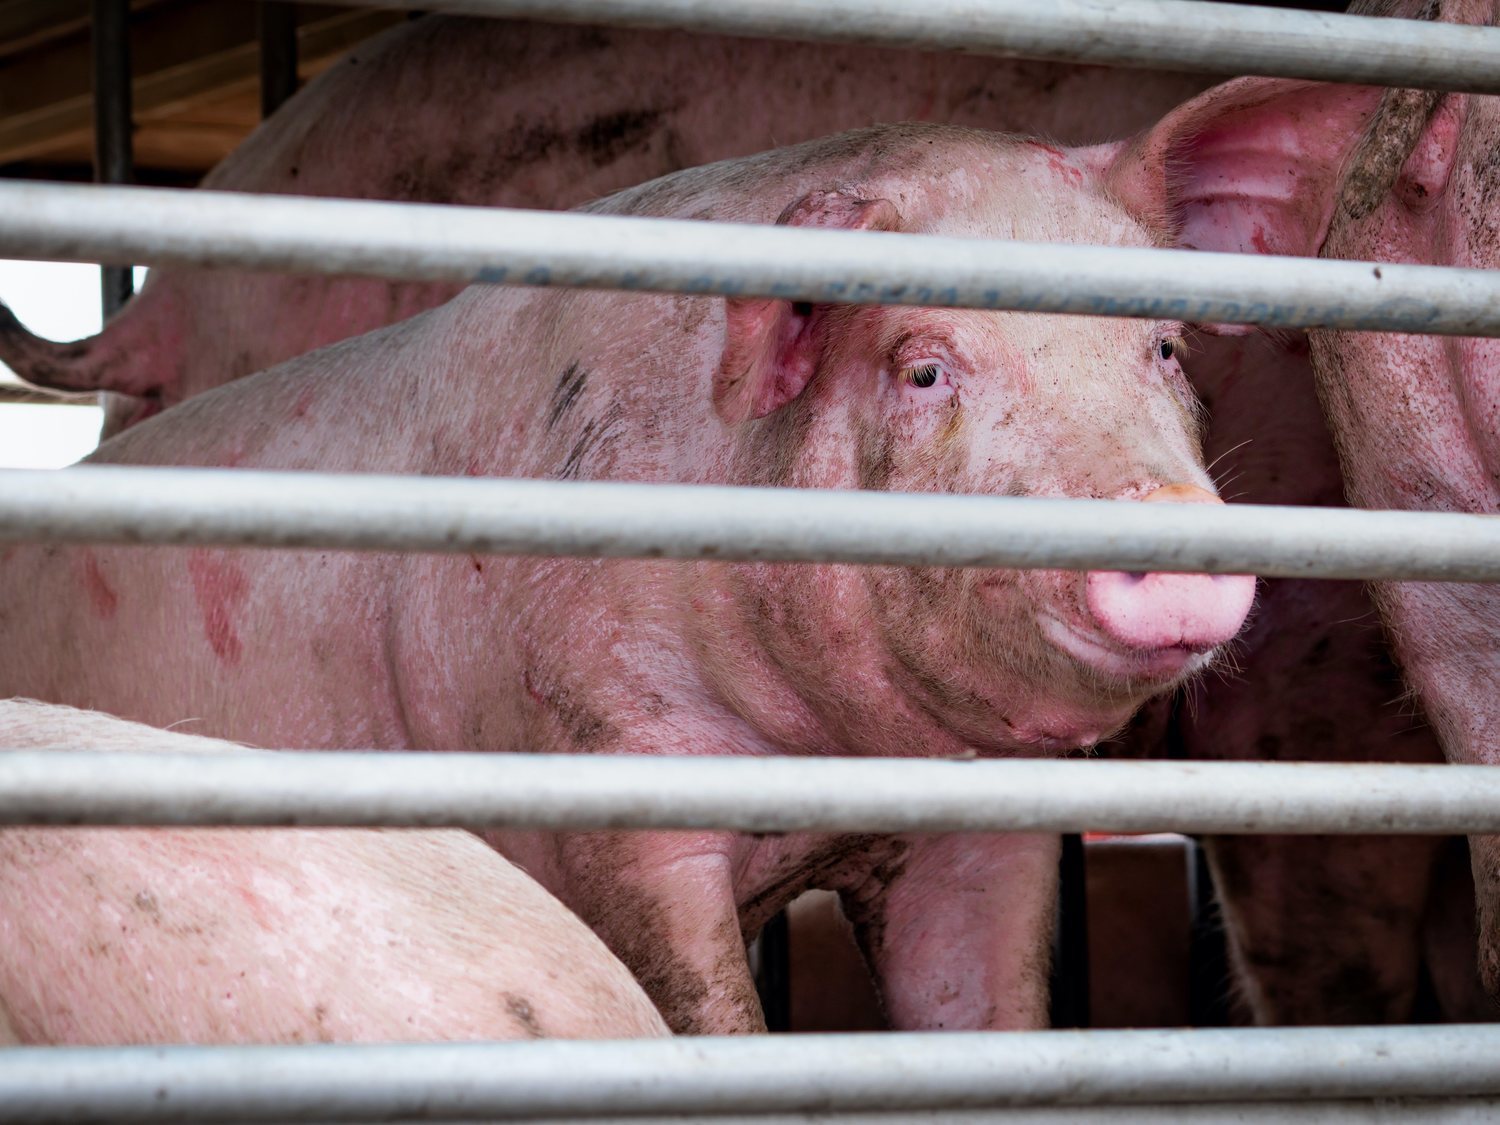 Detectan en China una cepa de gripe porcina desconocida con "alto potencial pandémico" en humanos